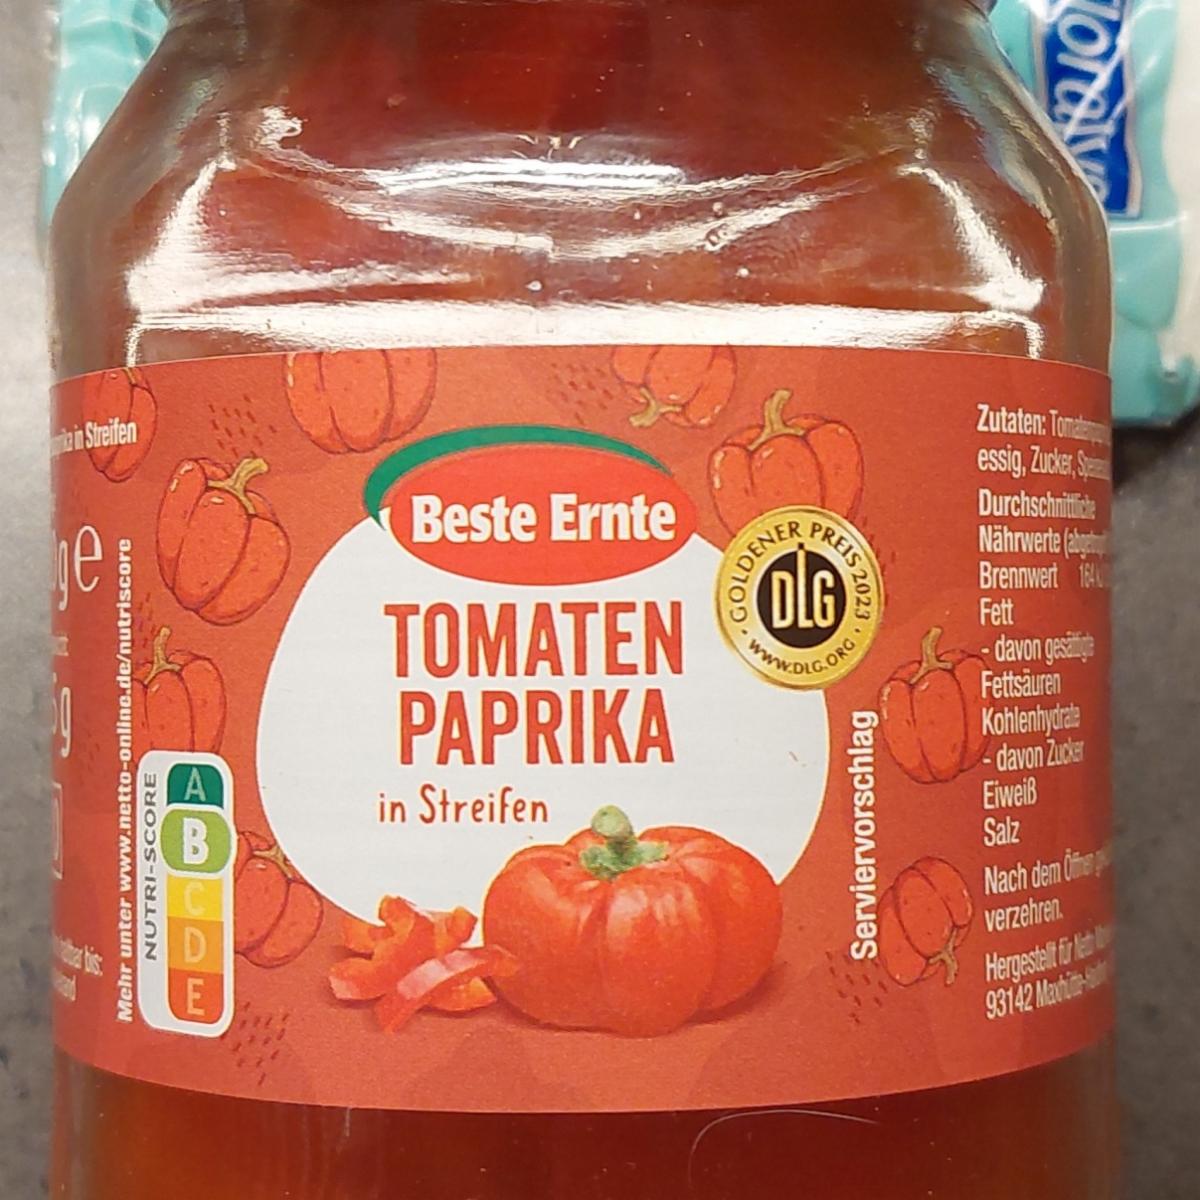 Fotografie - Tomaten Paprika in Streifen Beste Ernte